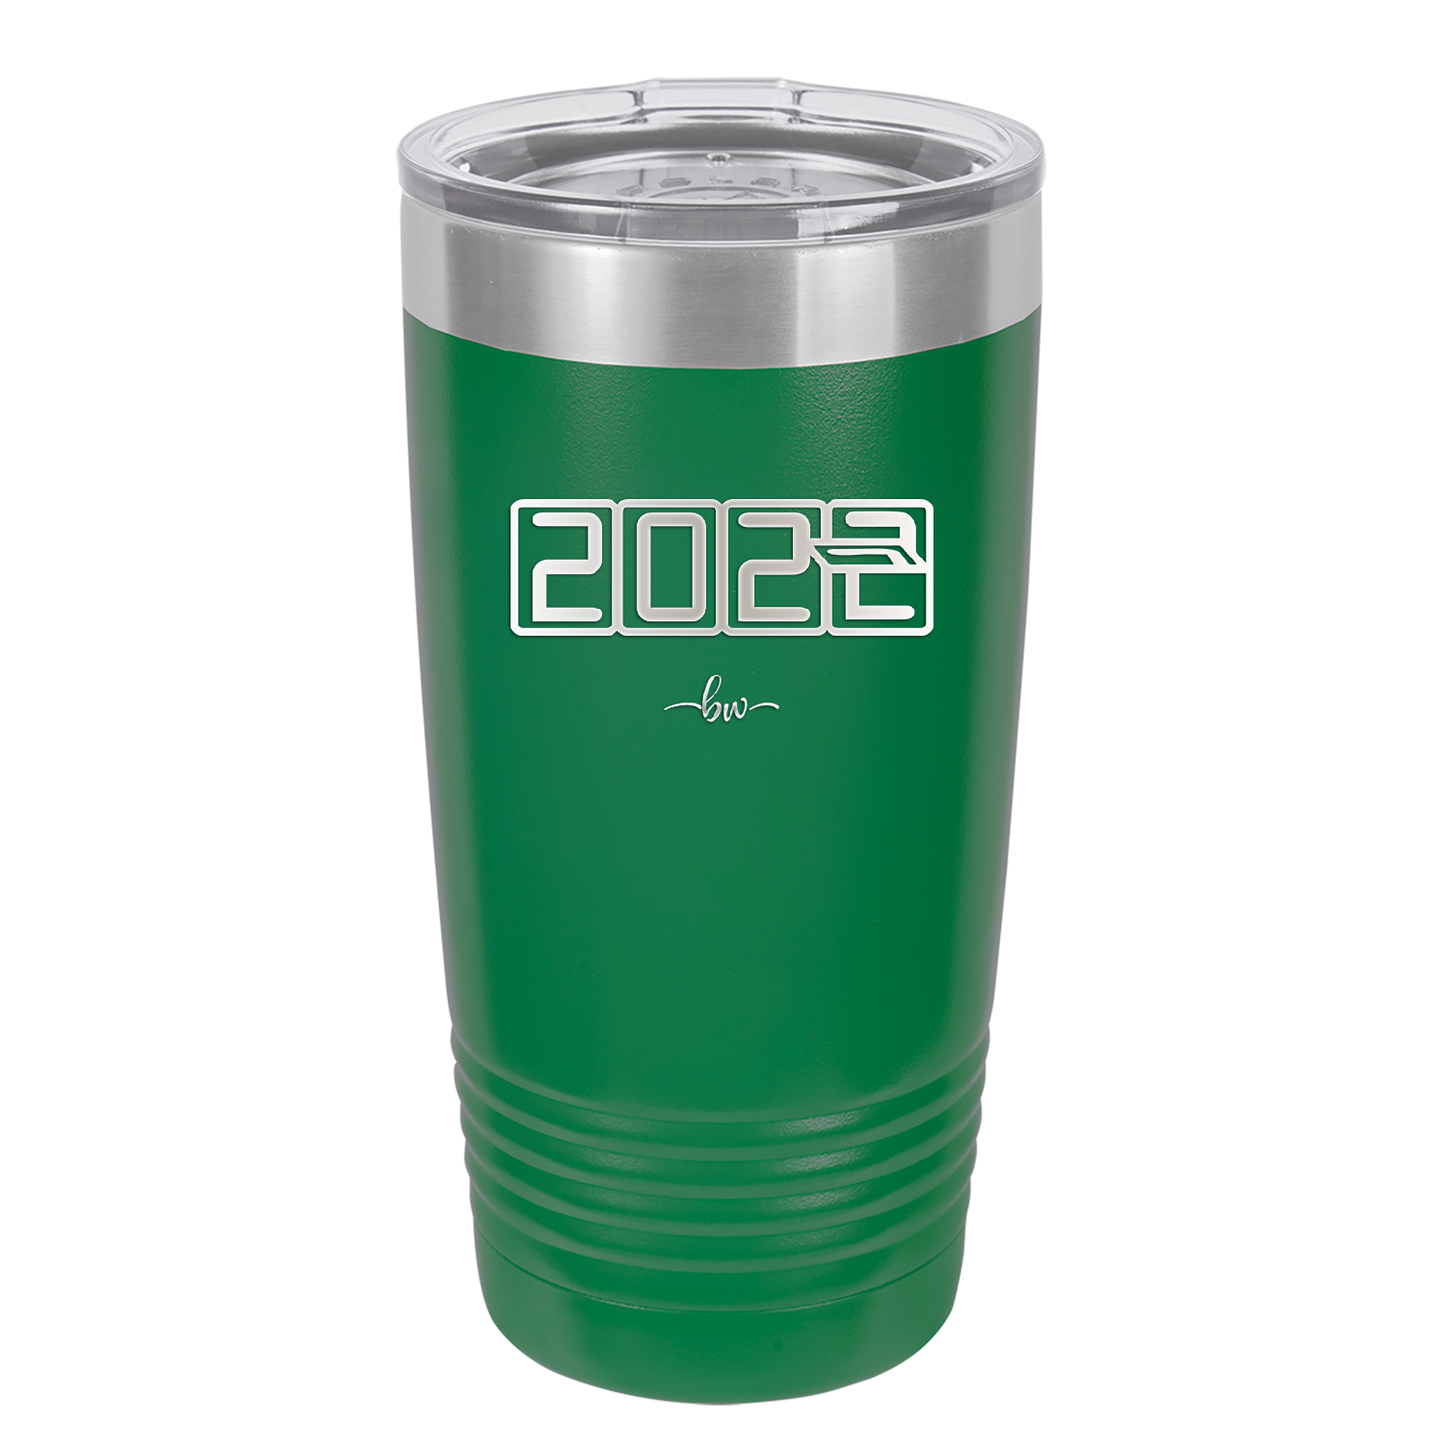 20 oz 2023 countdown-  green